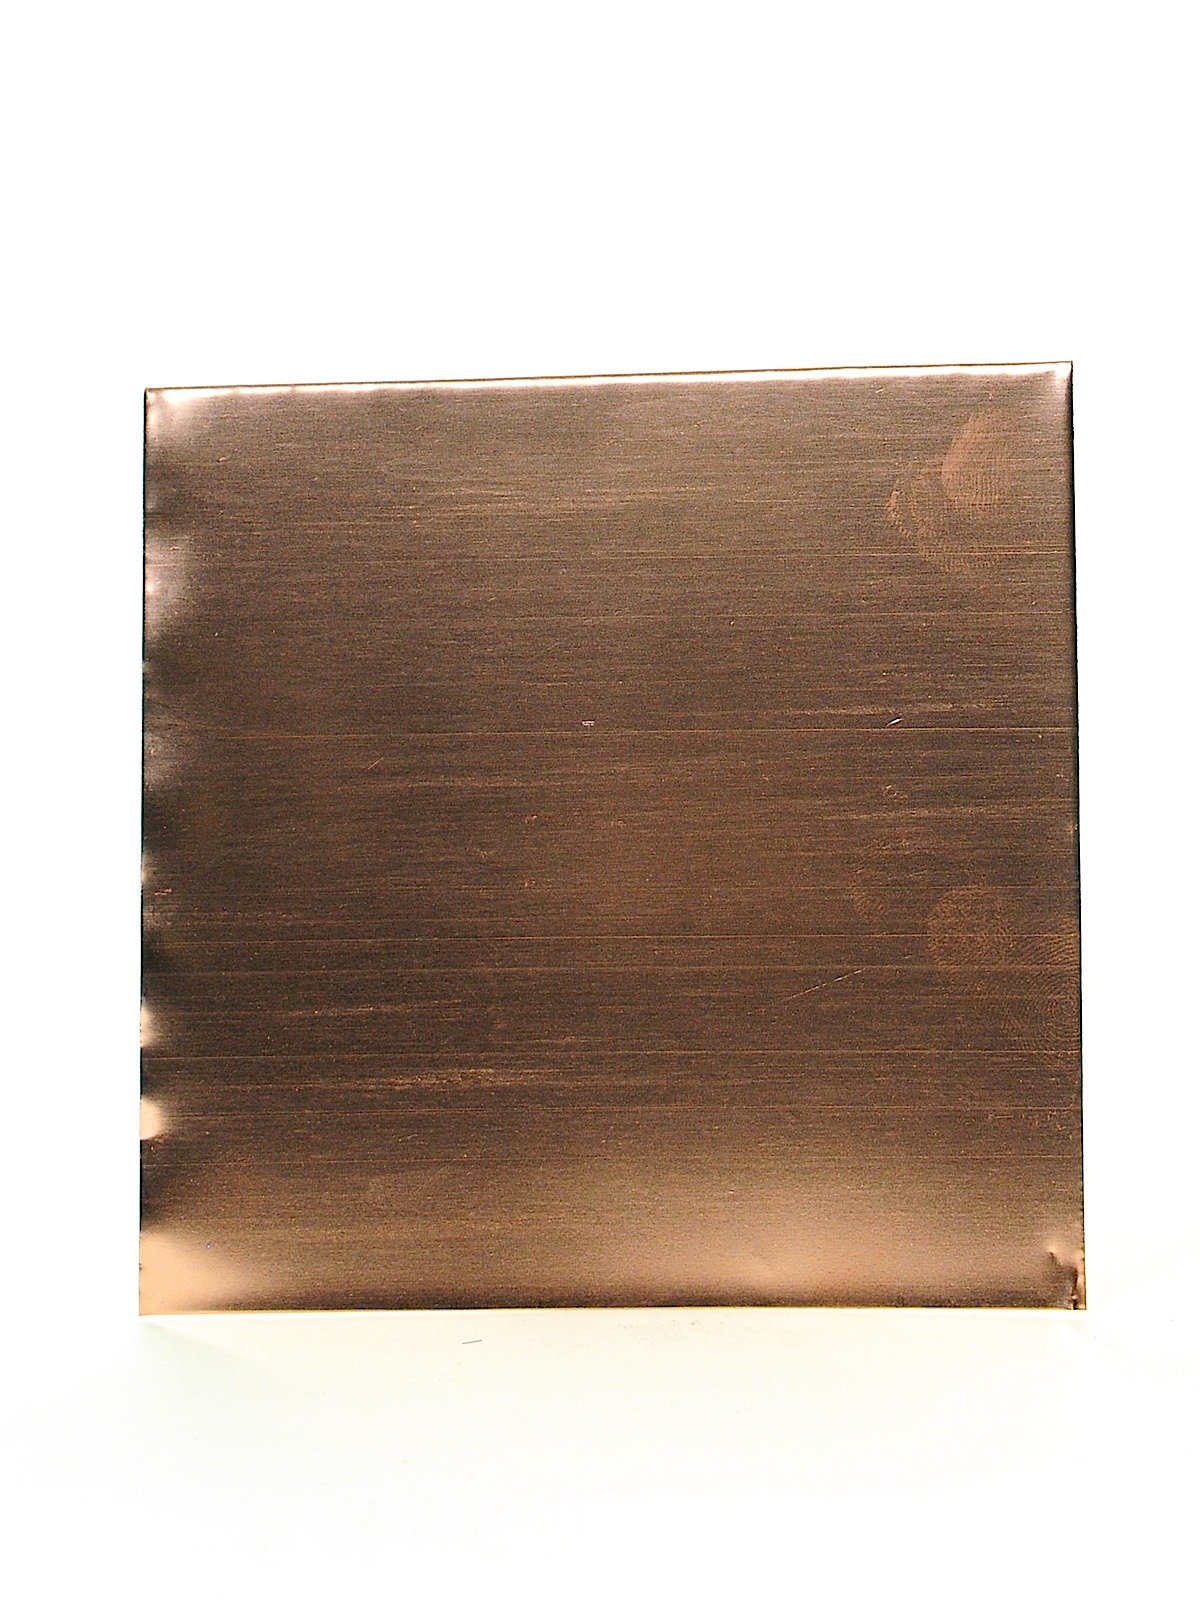 Art Metal Foil Sheets - Pkg of 12, 36 Gauge, Copper